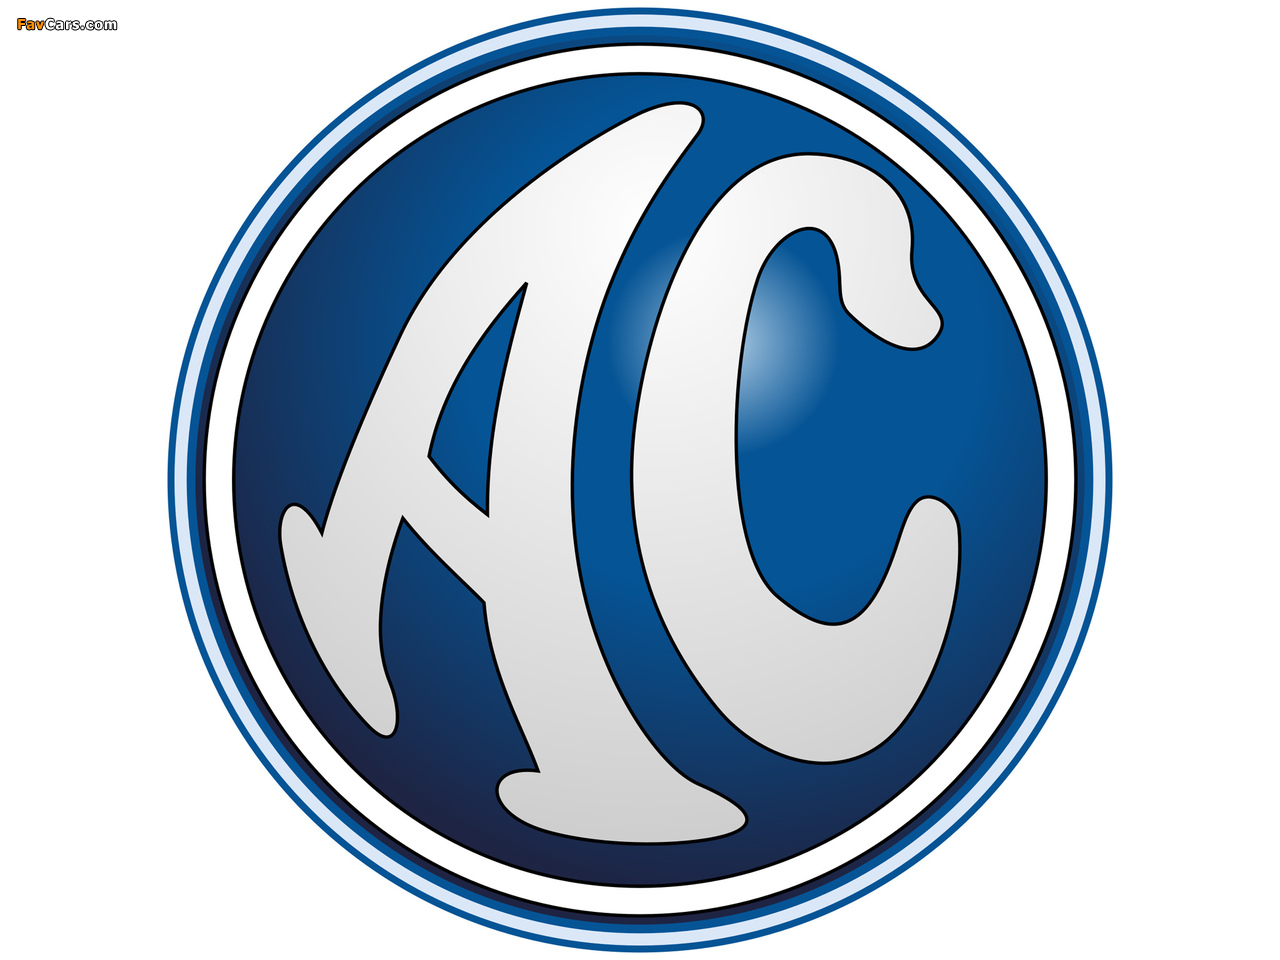 AC Logotypes photos (1280 x 960)